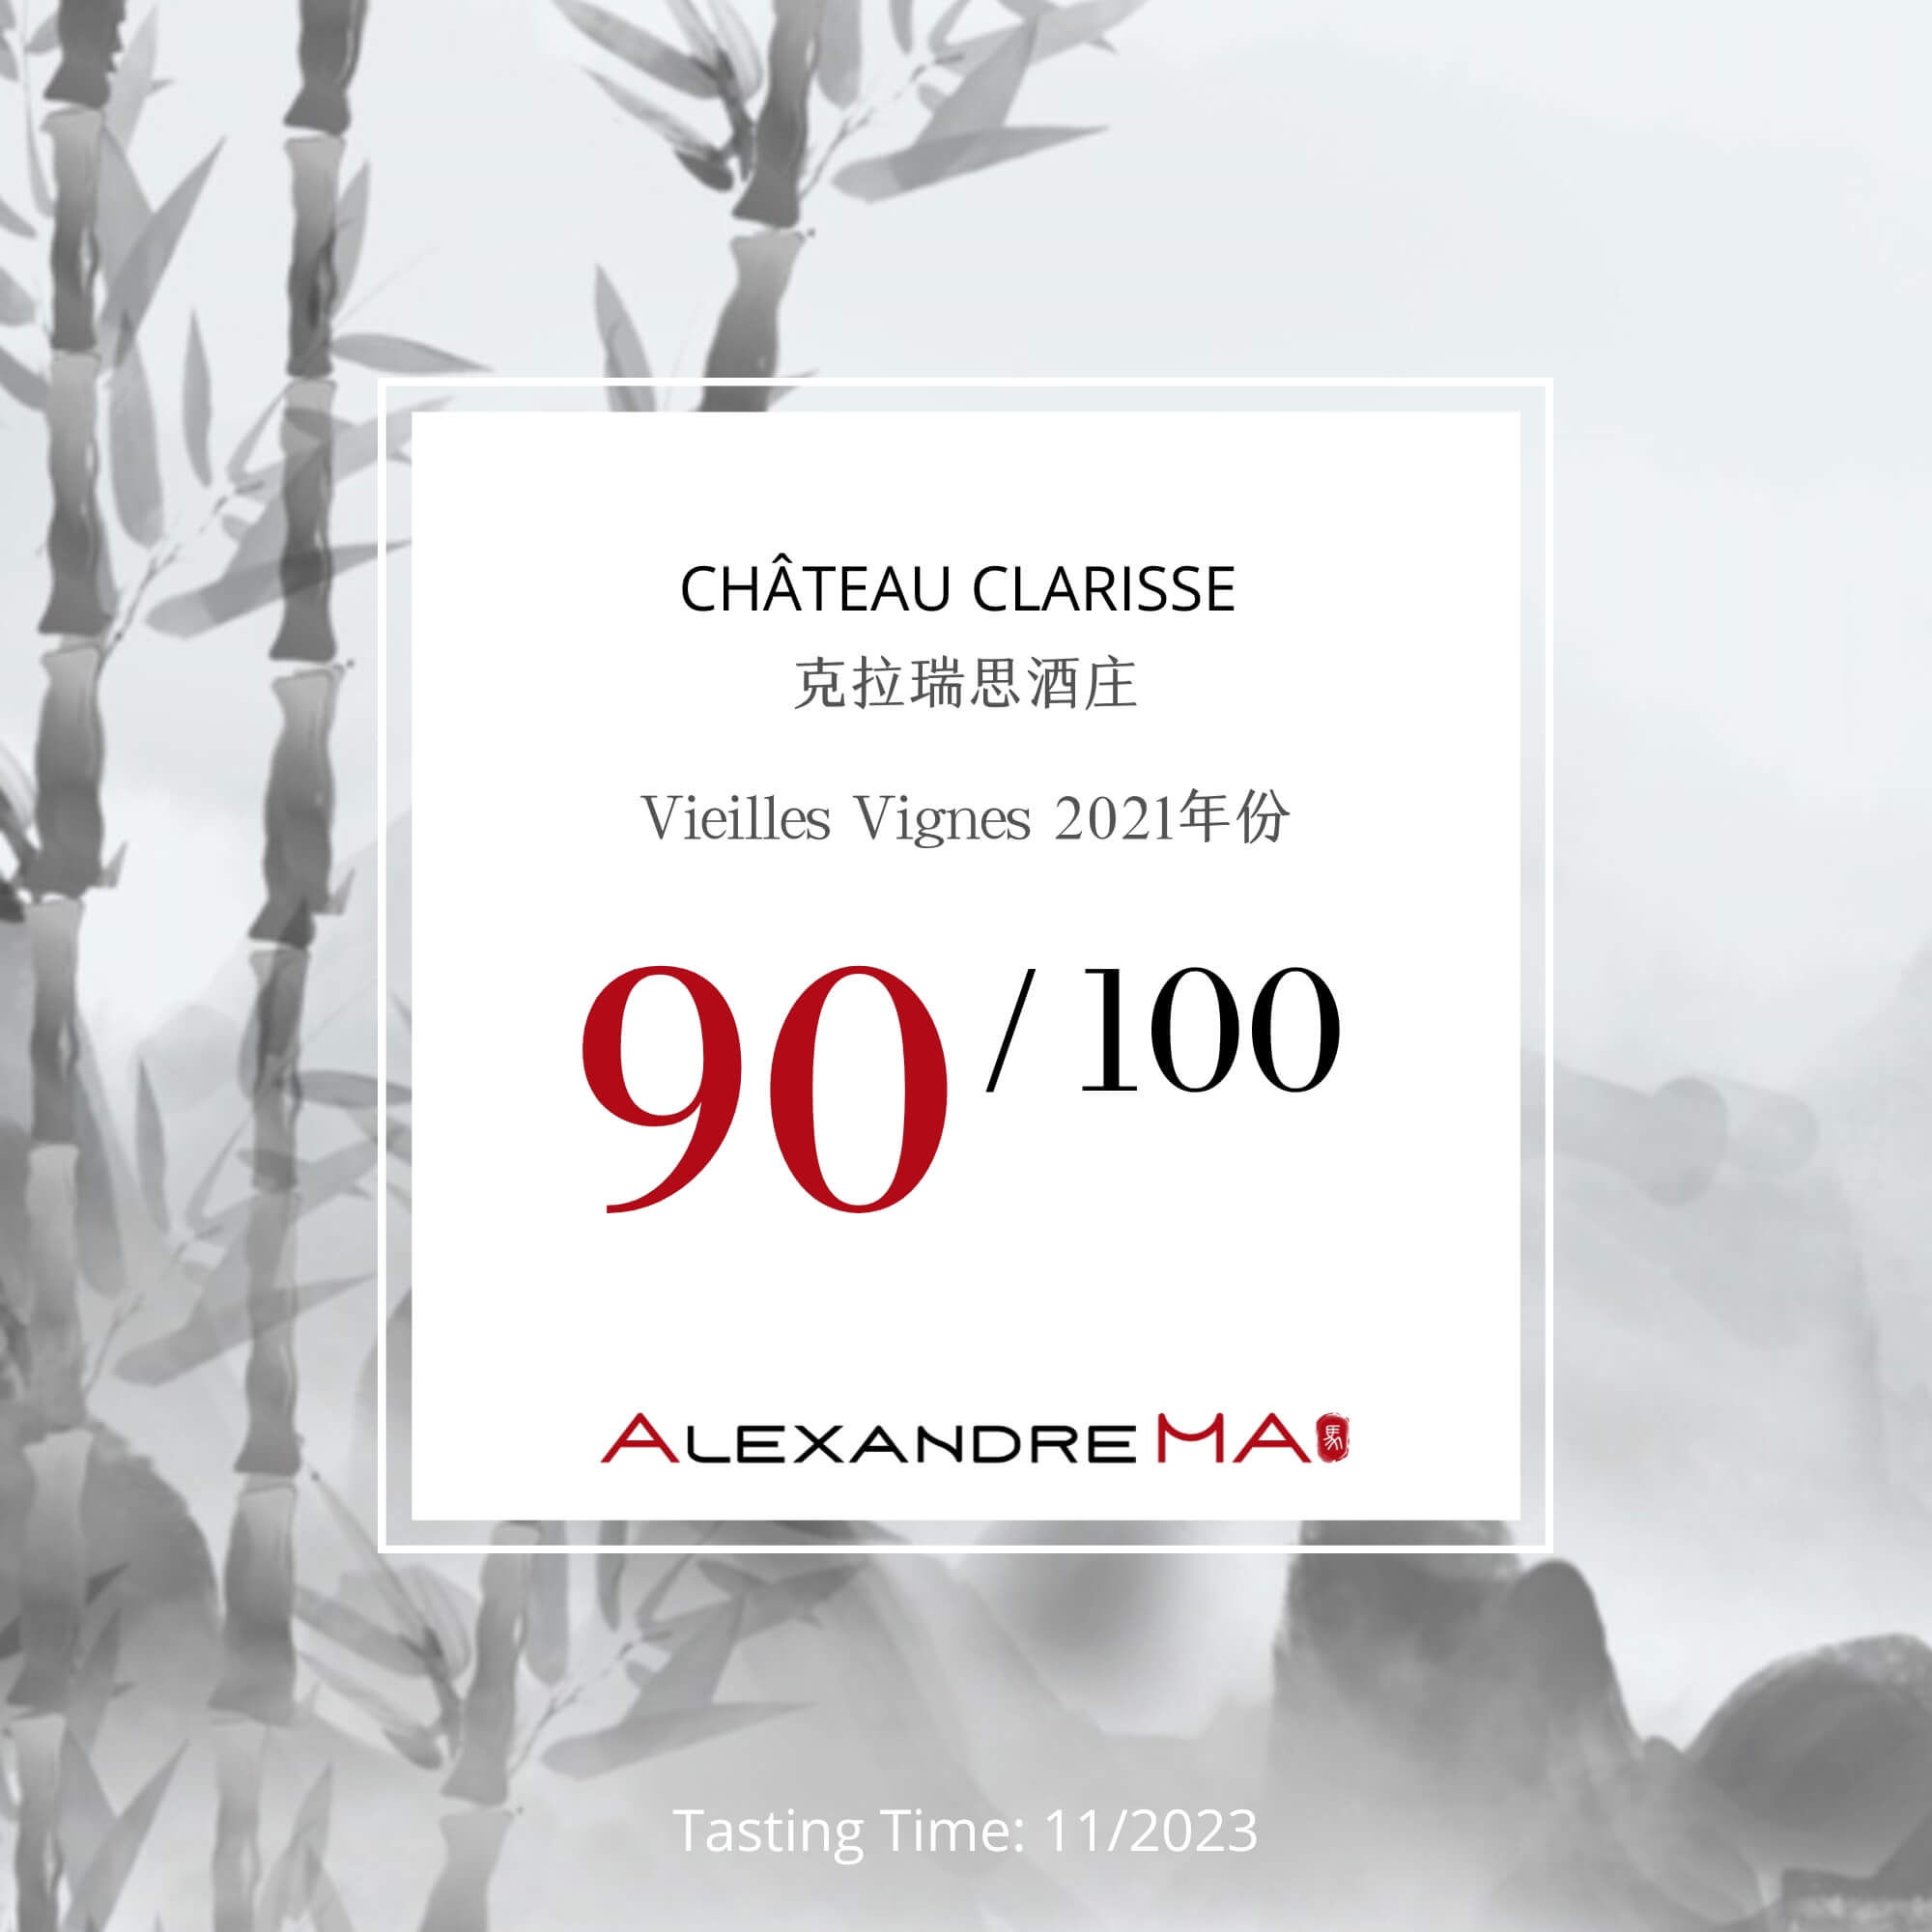 Château Clarisse-Vieilles Vignes 2021 - Alexandre MA